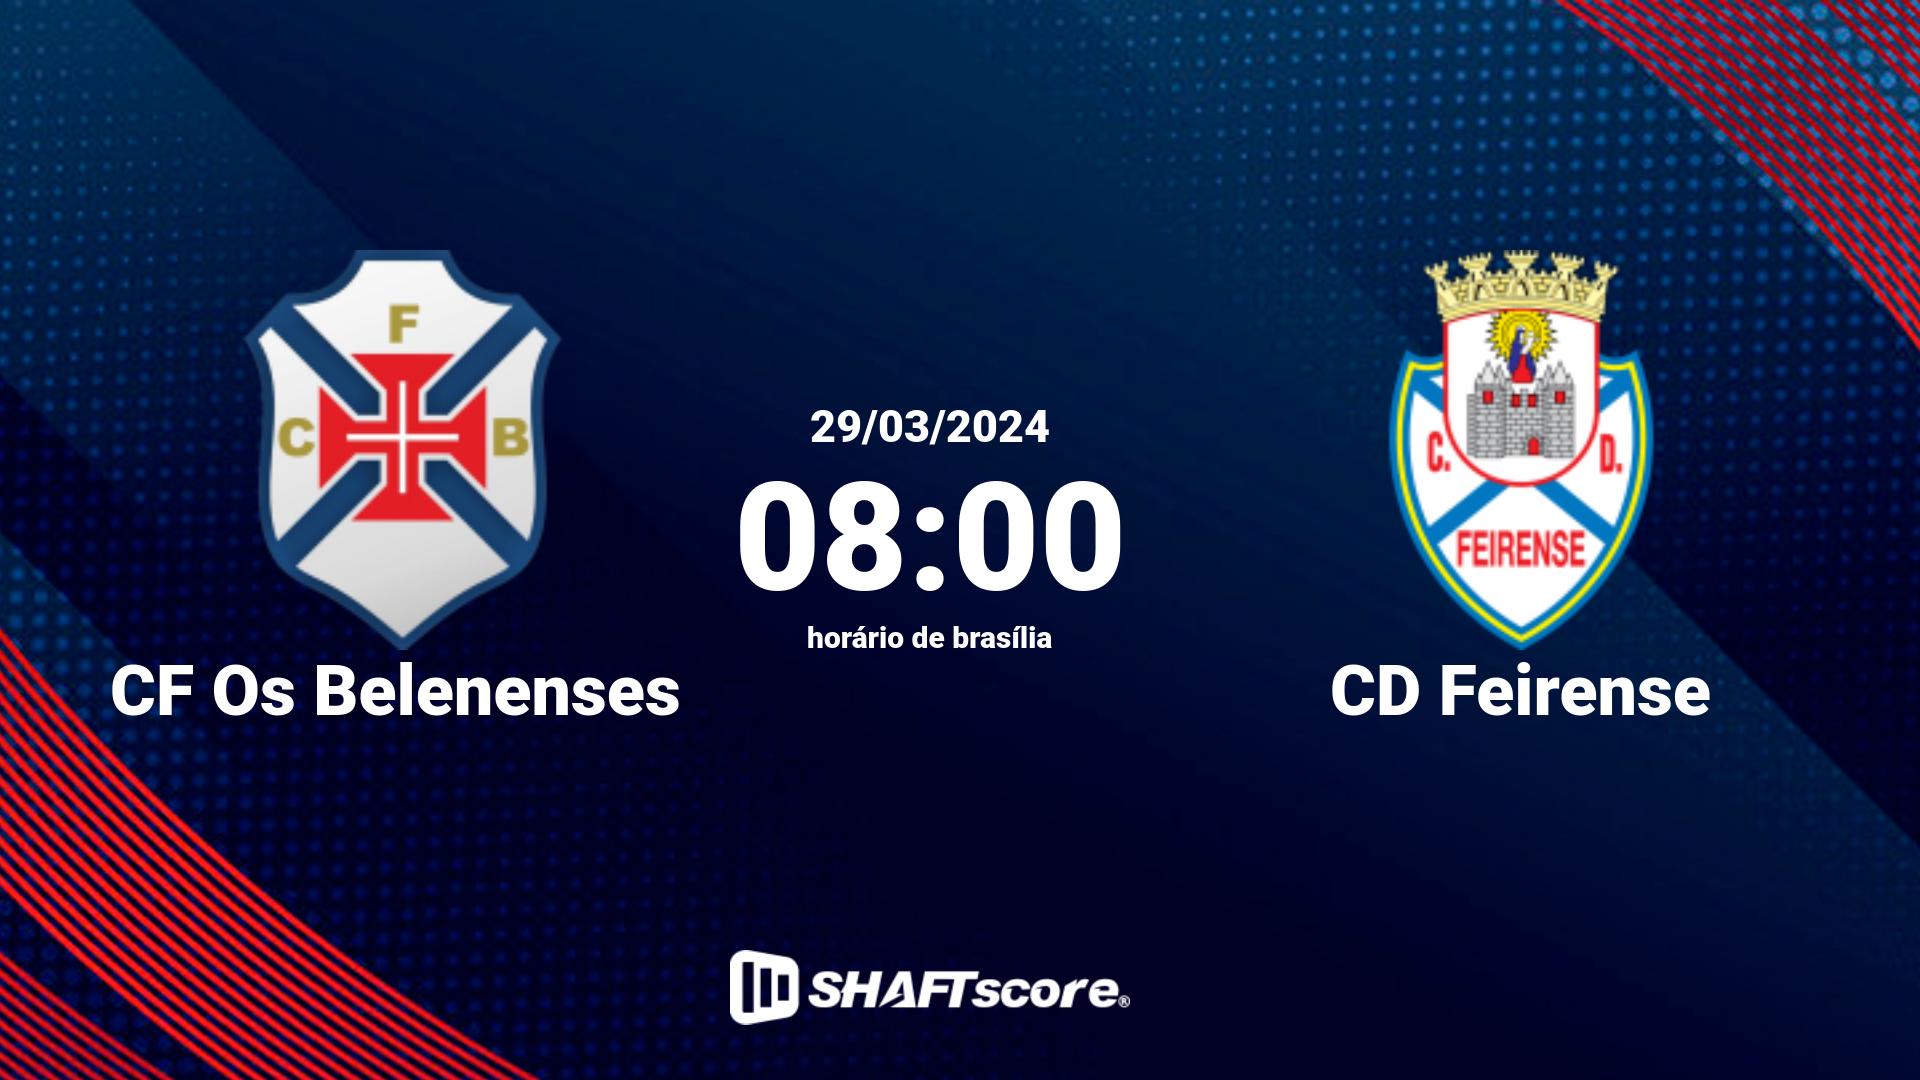 Estatísticas do jogo CF Os Belenenses vs CD Feirense 29.03 08:00